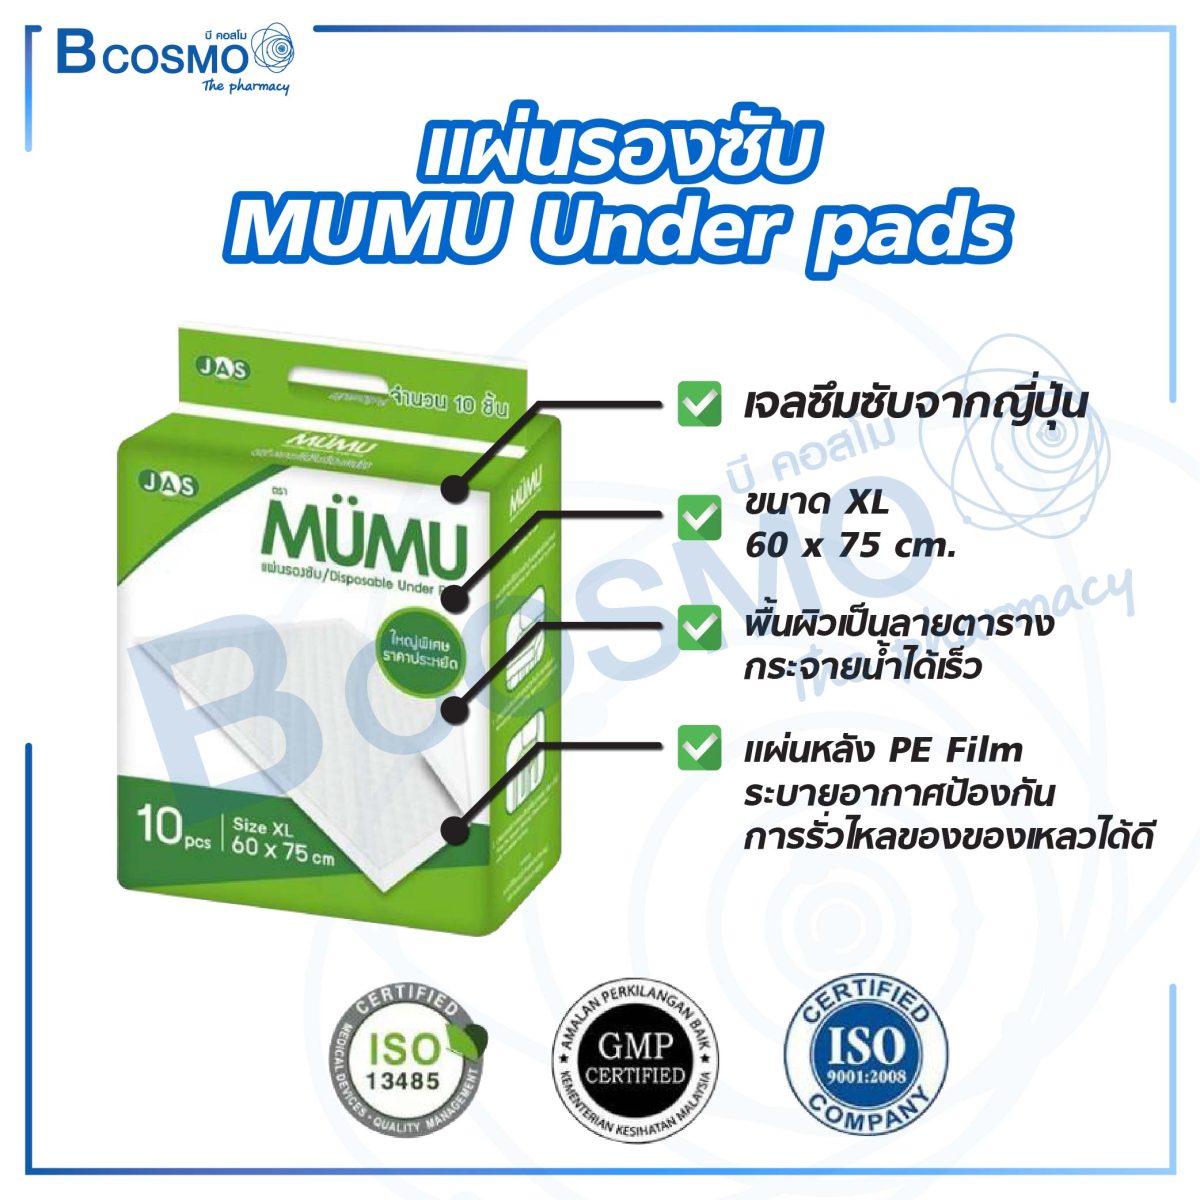 แผ่นรองซับ MUMU Under pads Size XL 60 x 75 cm. [ยกลัง 12 แพ็ก]